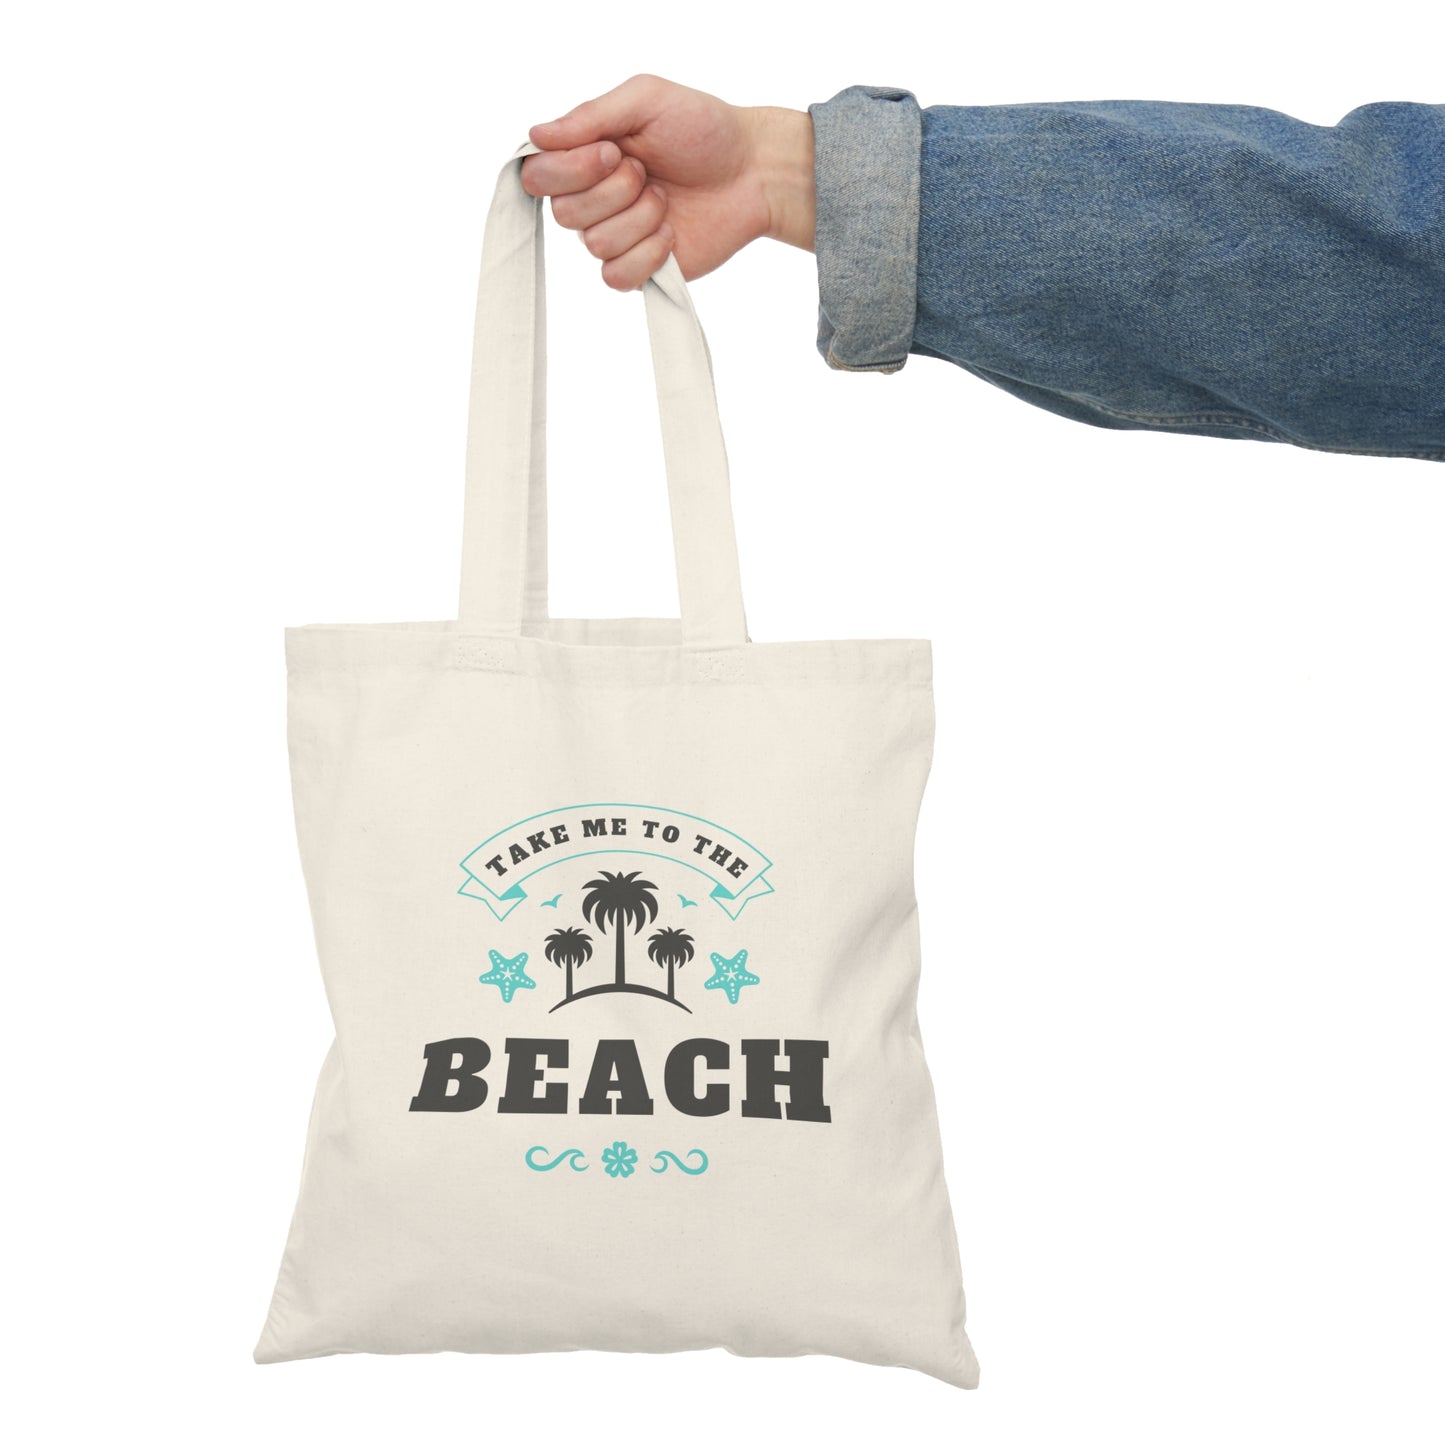 Take me to the beach Natural Tote Bag beach bag